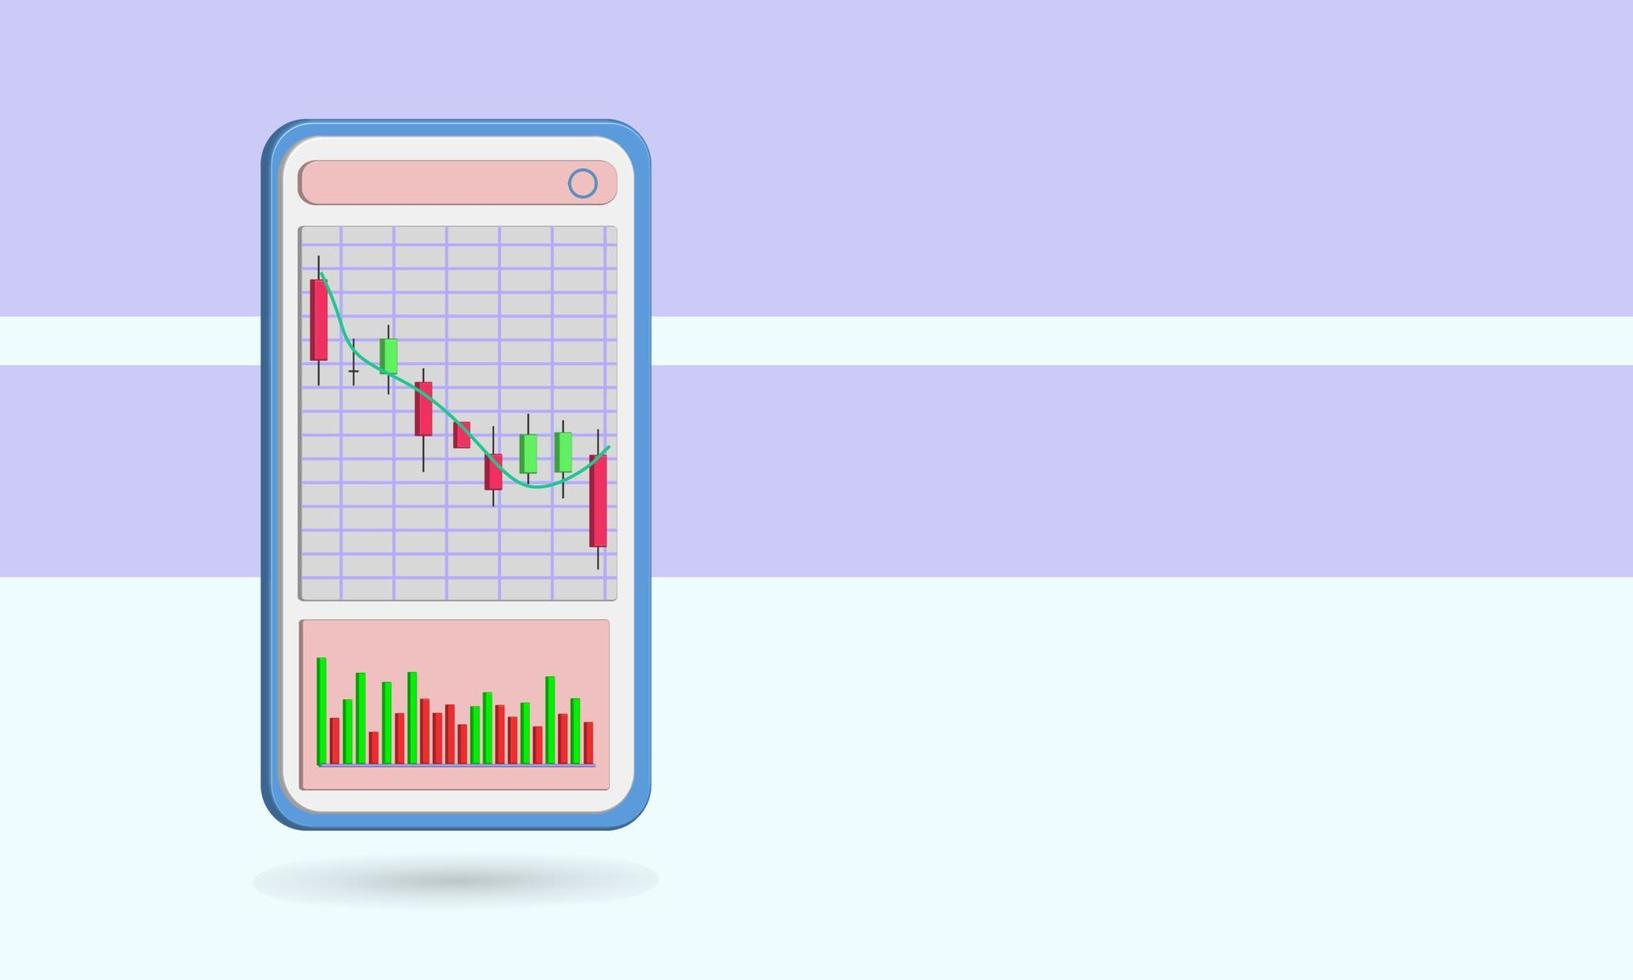 Vetor de ícone de vela 3D e volume, tema do mercado de ações para investimento, efeito de tendência de baixa.